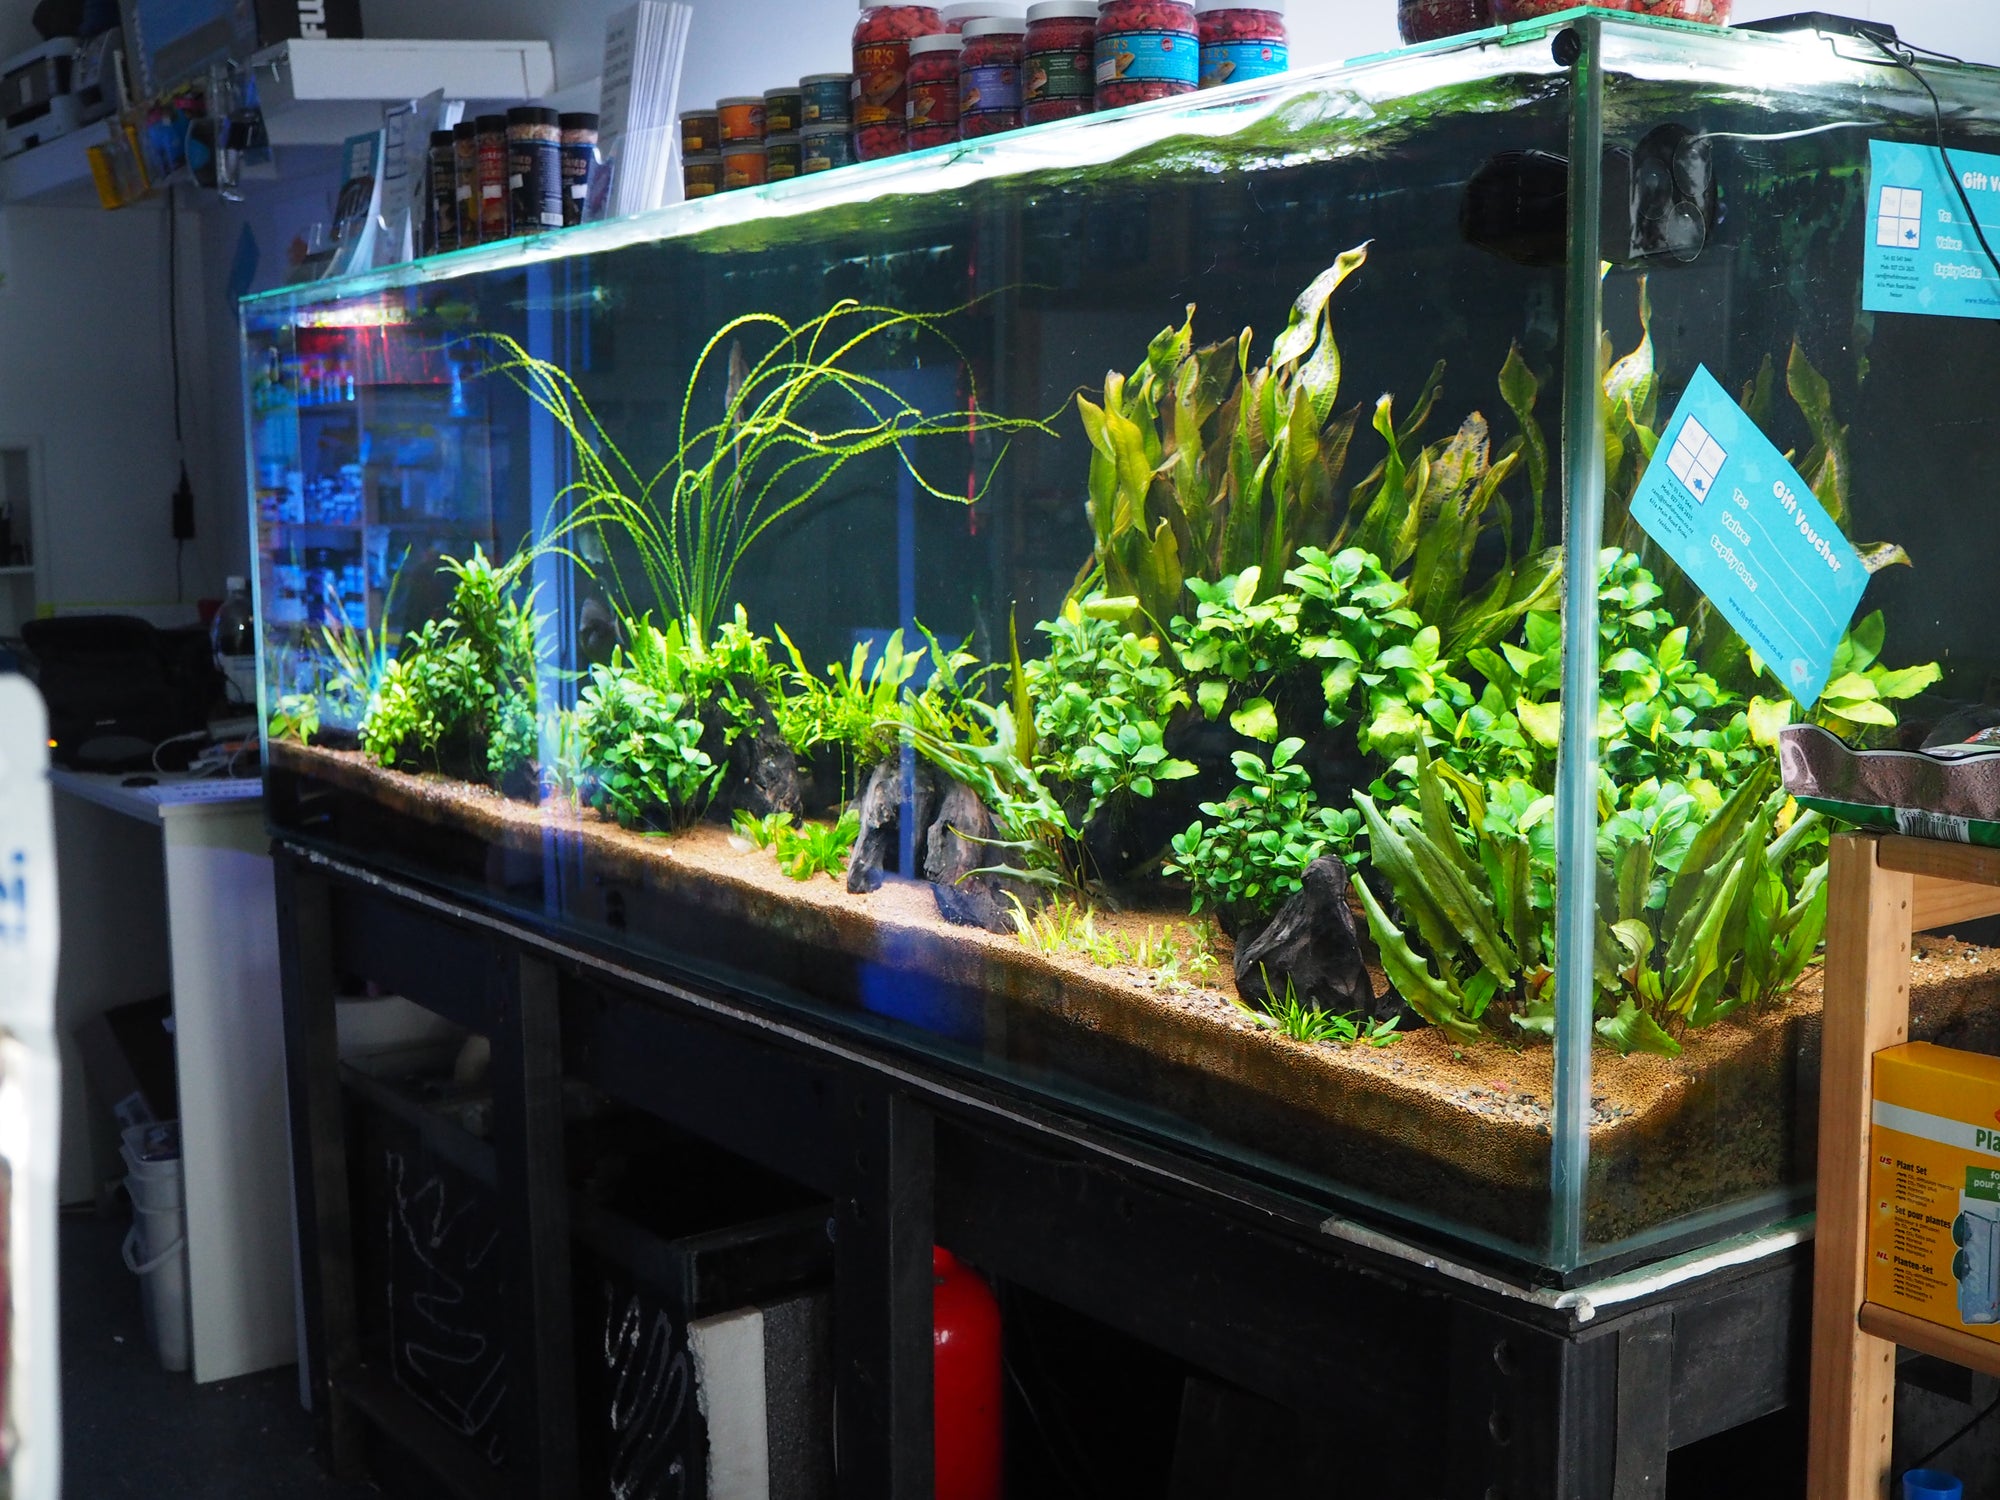 Let's talk about low tech planted aquarium. Part 2